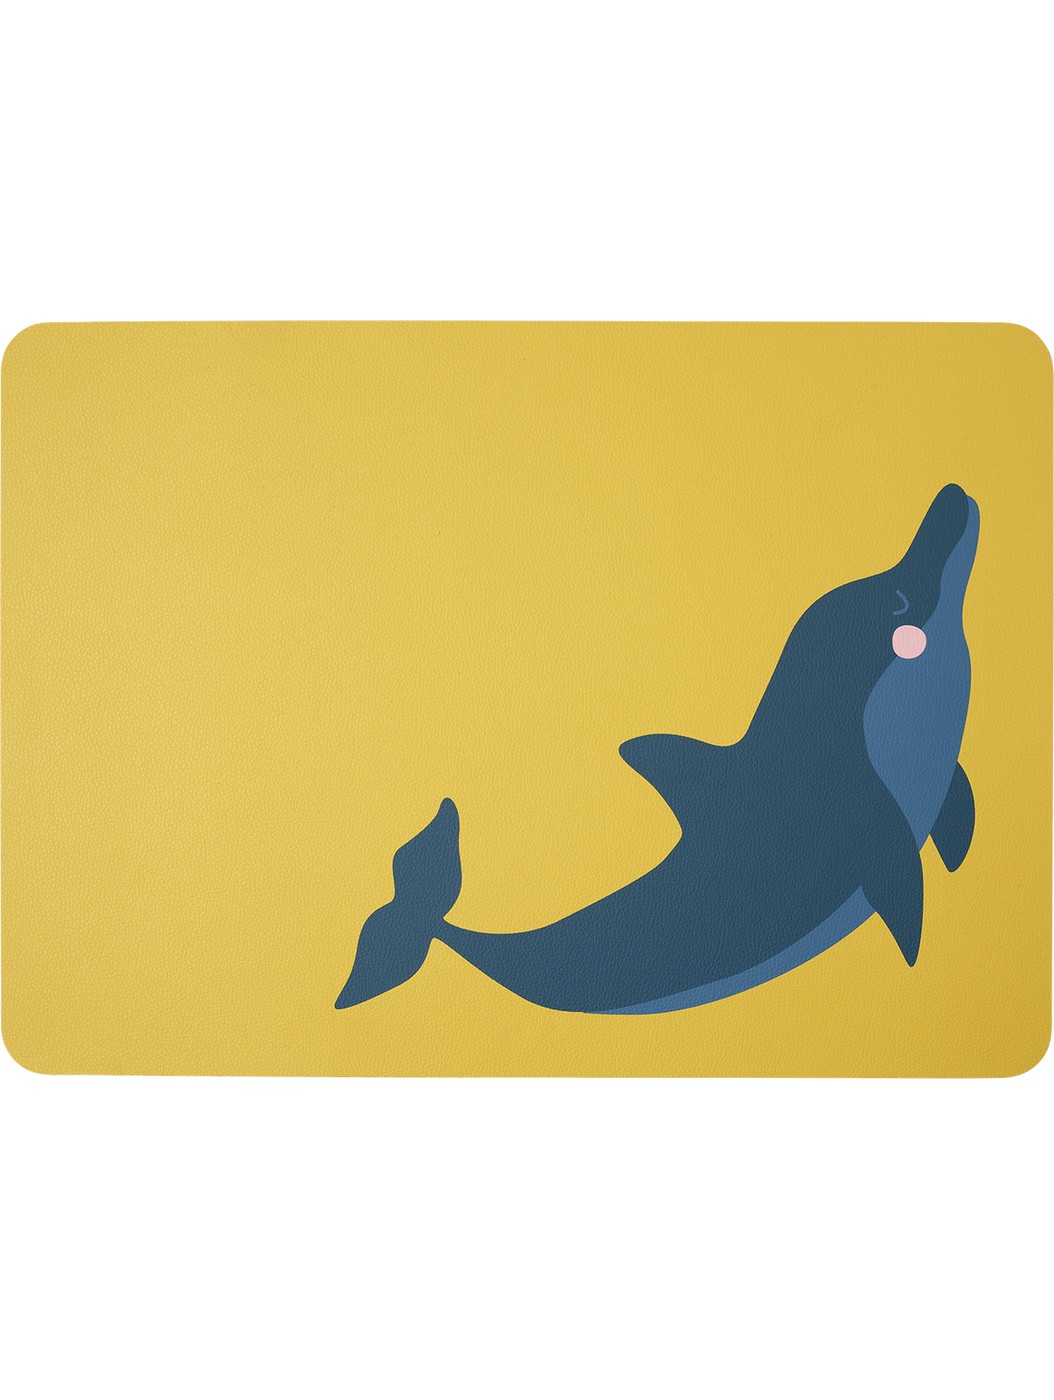 Dětské prostírání 46x33 cm s motivem delfína COPPA KIDS WILDLIFE ASA Selection - žluté